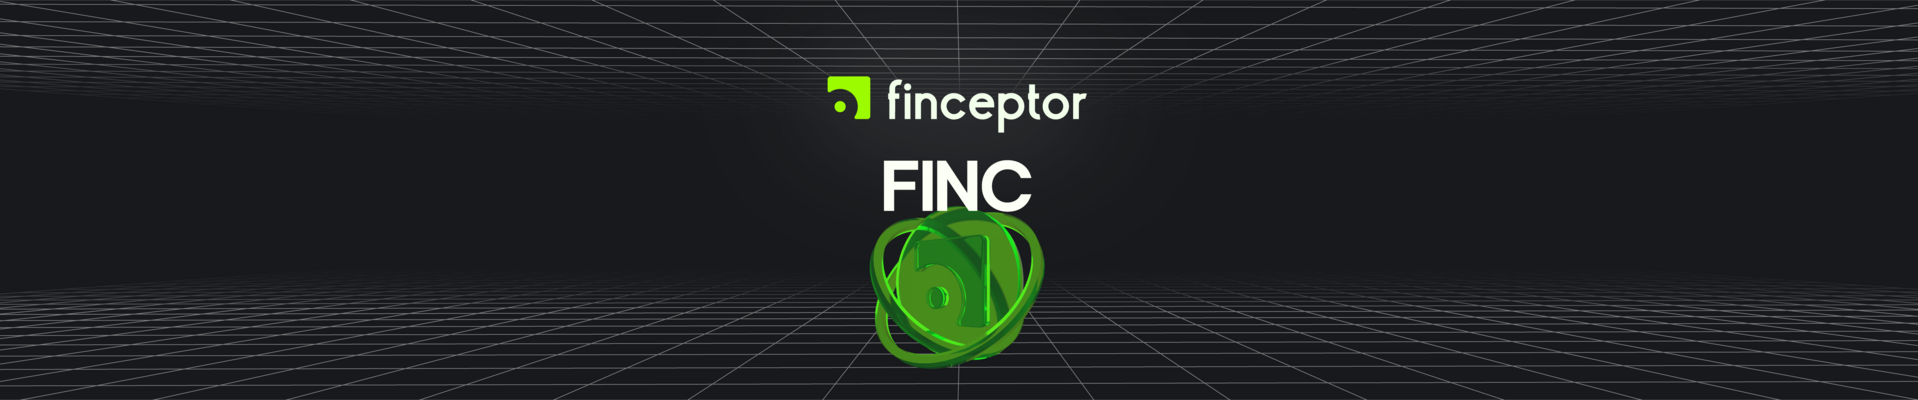 FINC Token banner